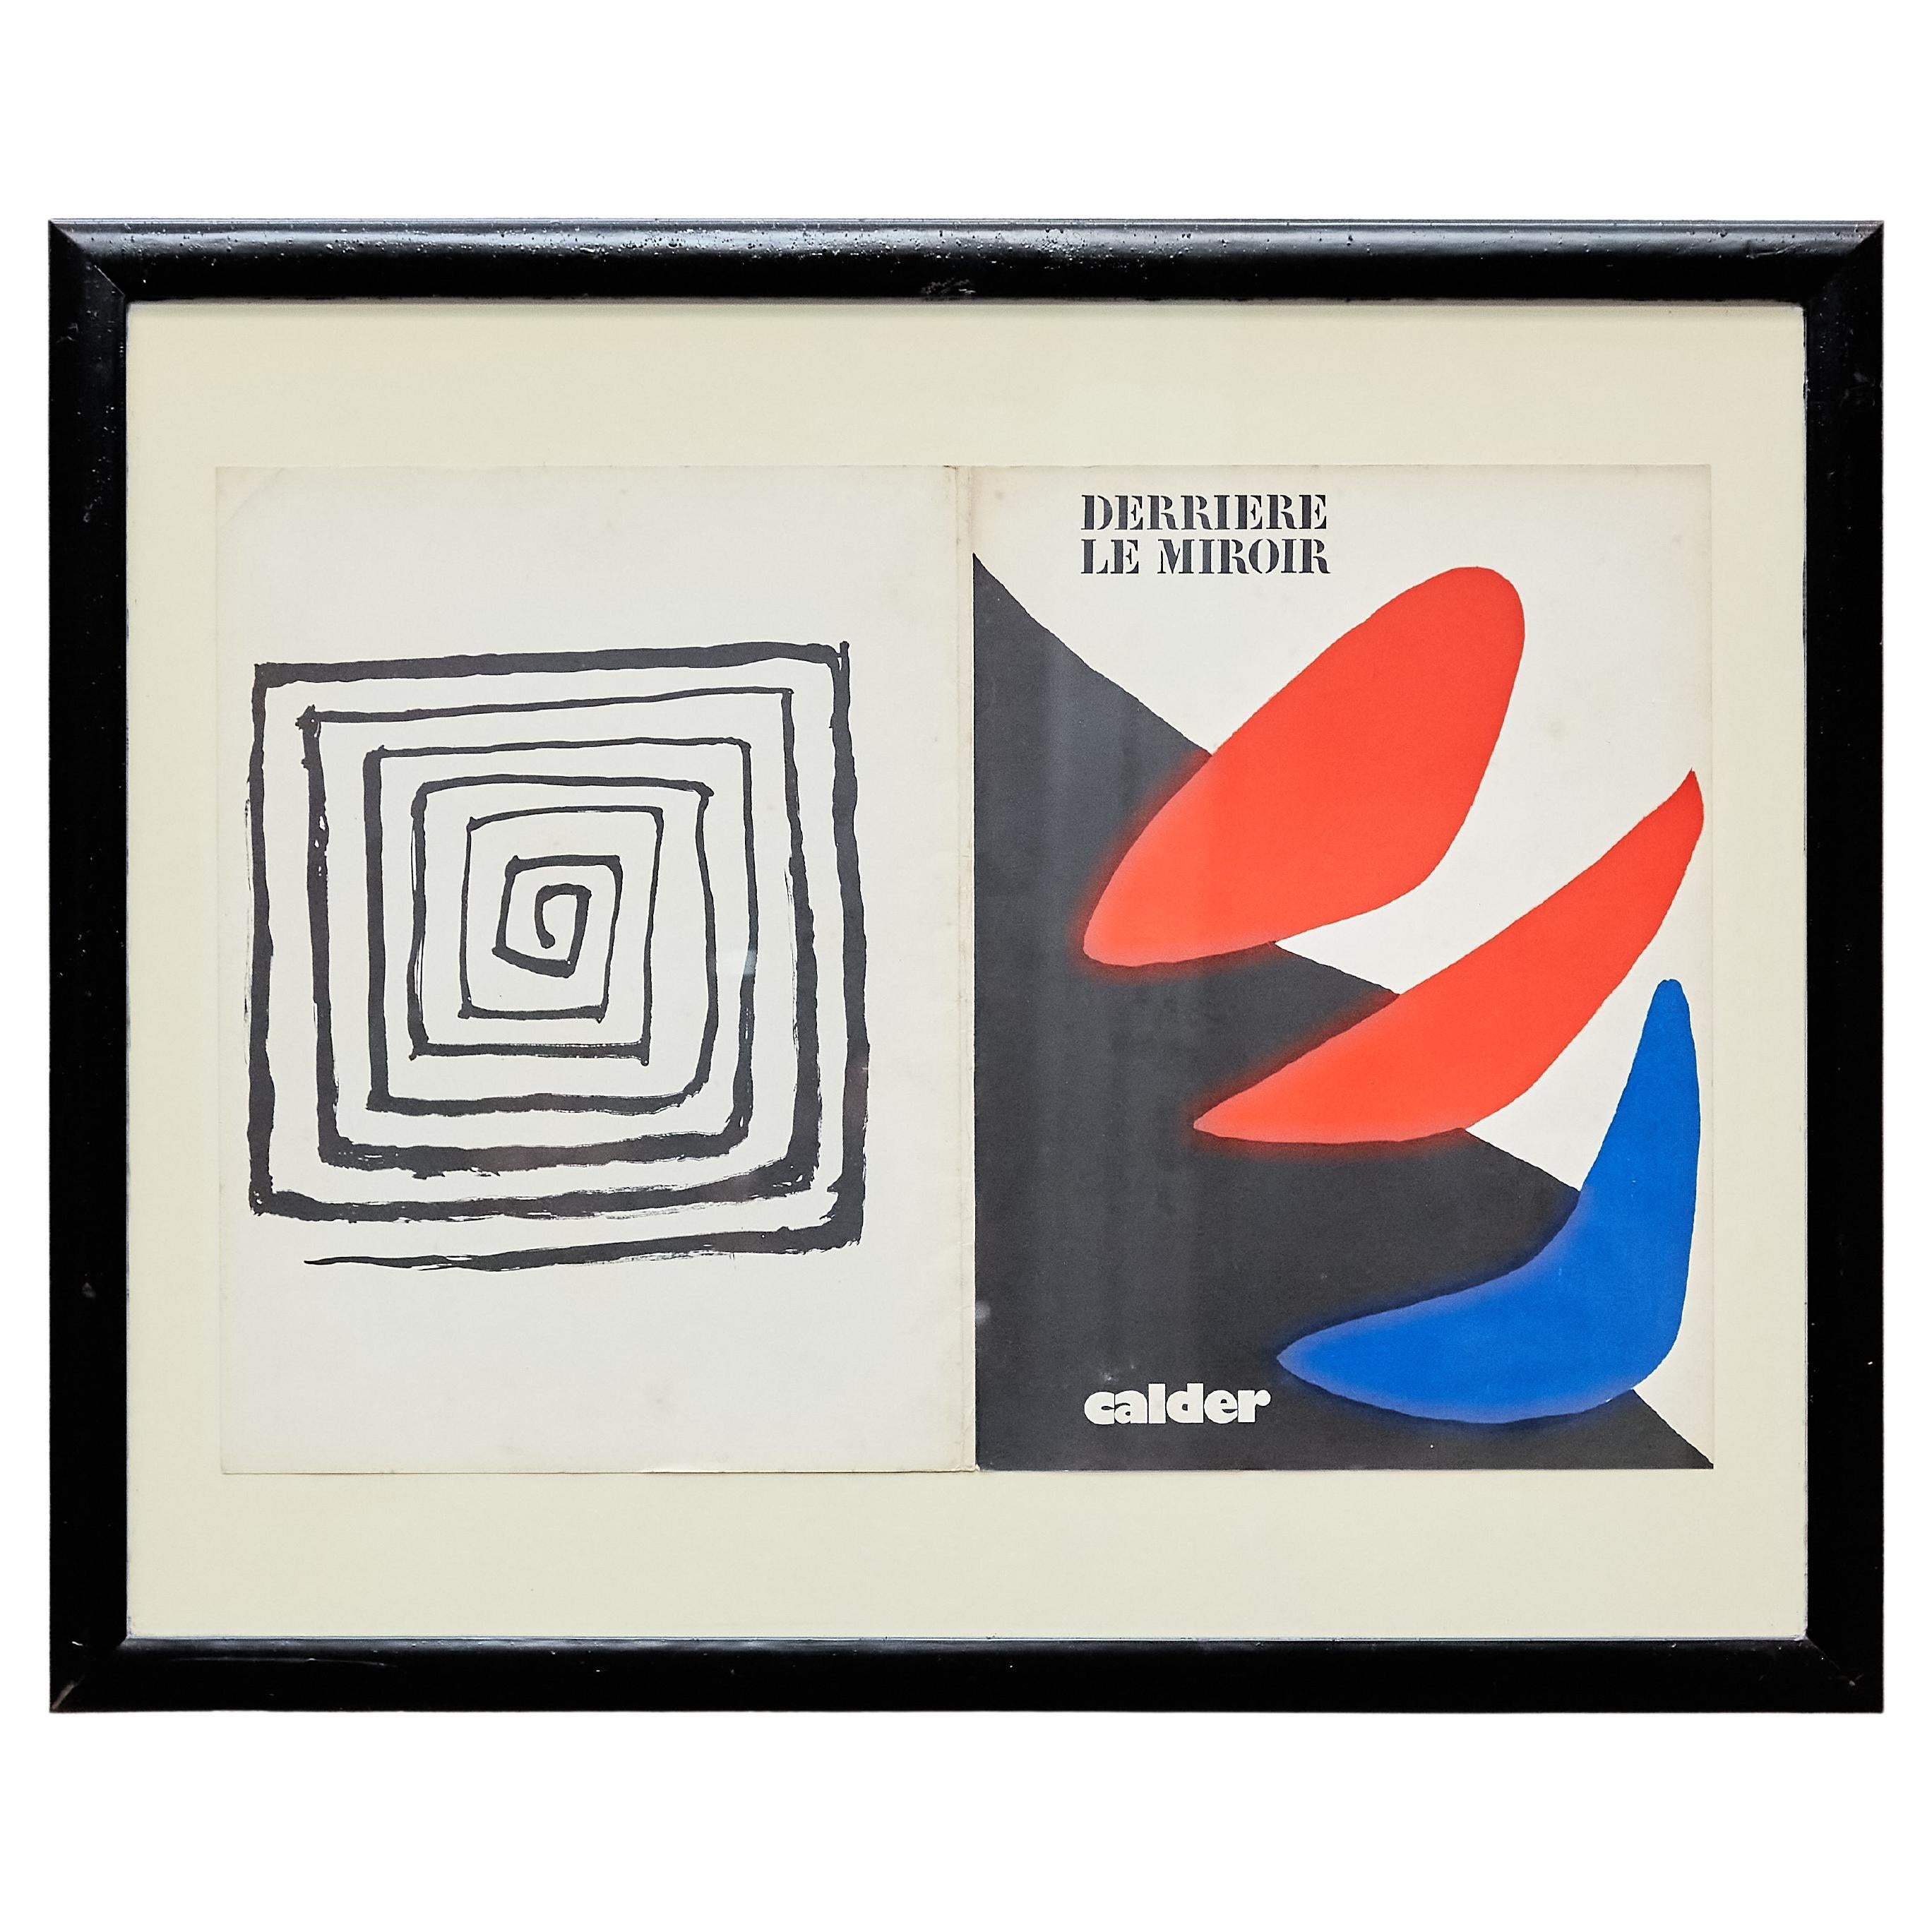 Gerahmtes Cover-Magazin von Alexander Calder für „Darriere Le Miroir“, um 1971